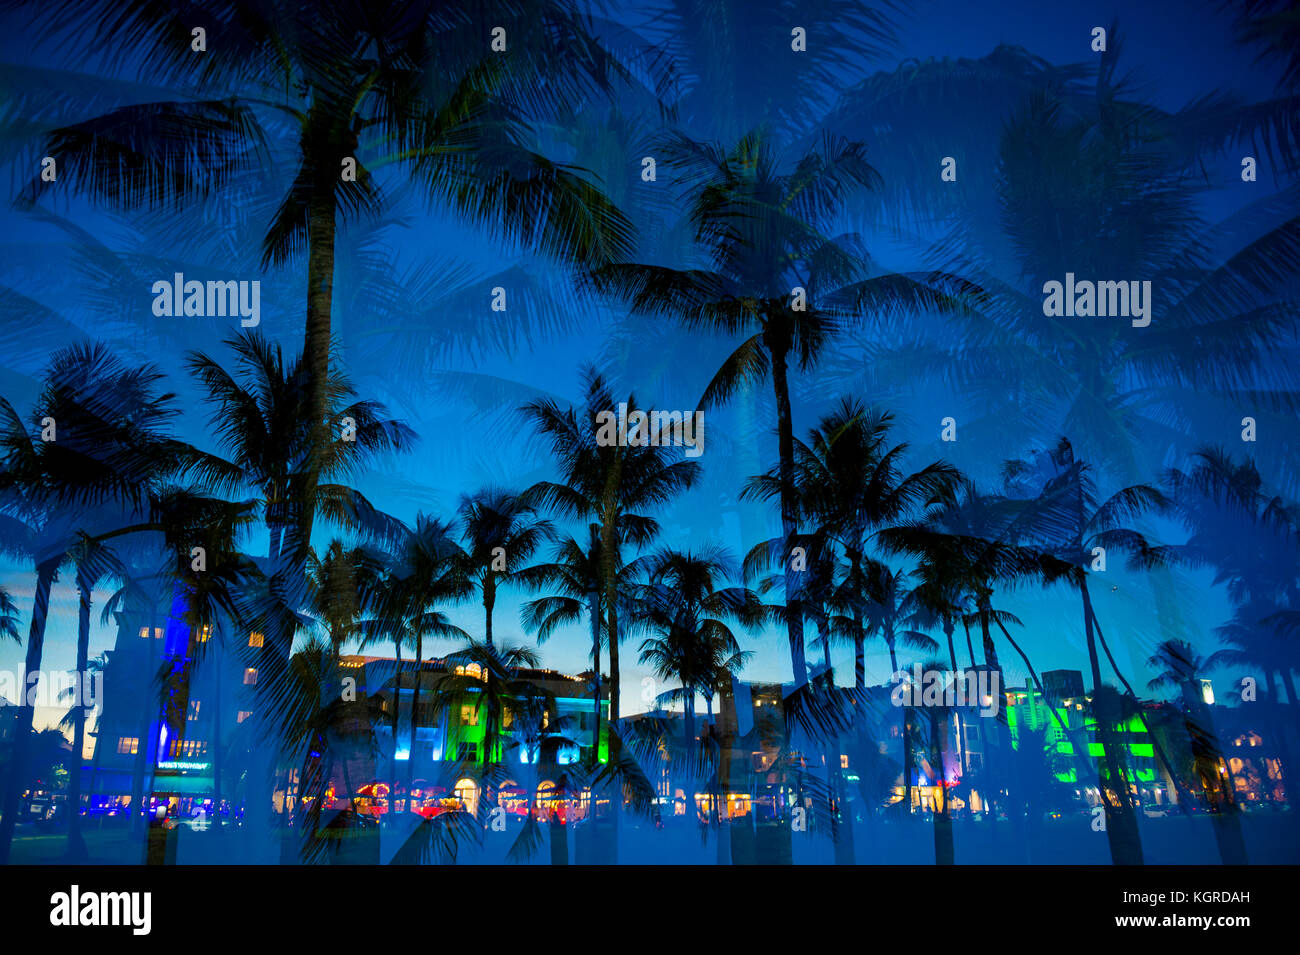 Vue d'exposition multiple au crépuscule de palmiers et de néons de Ocean Drive au crépuscule à South Beach, Miami, Floride, USA Banque D'Images